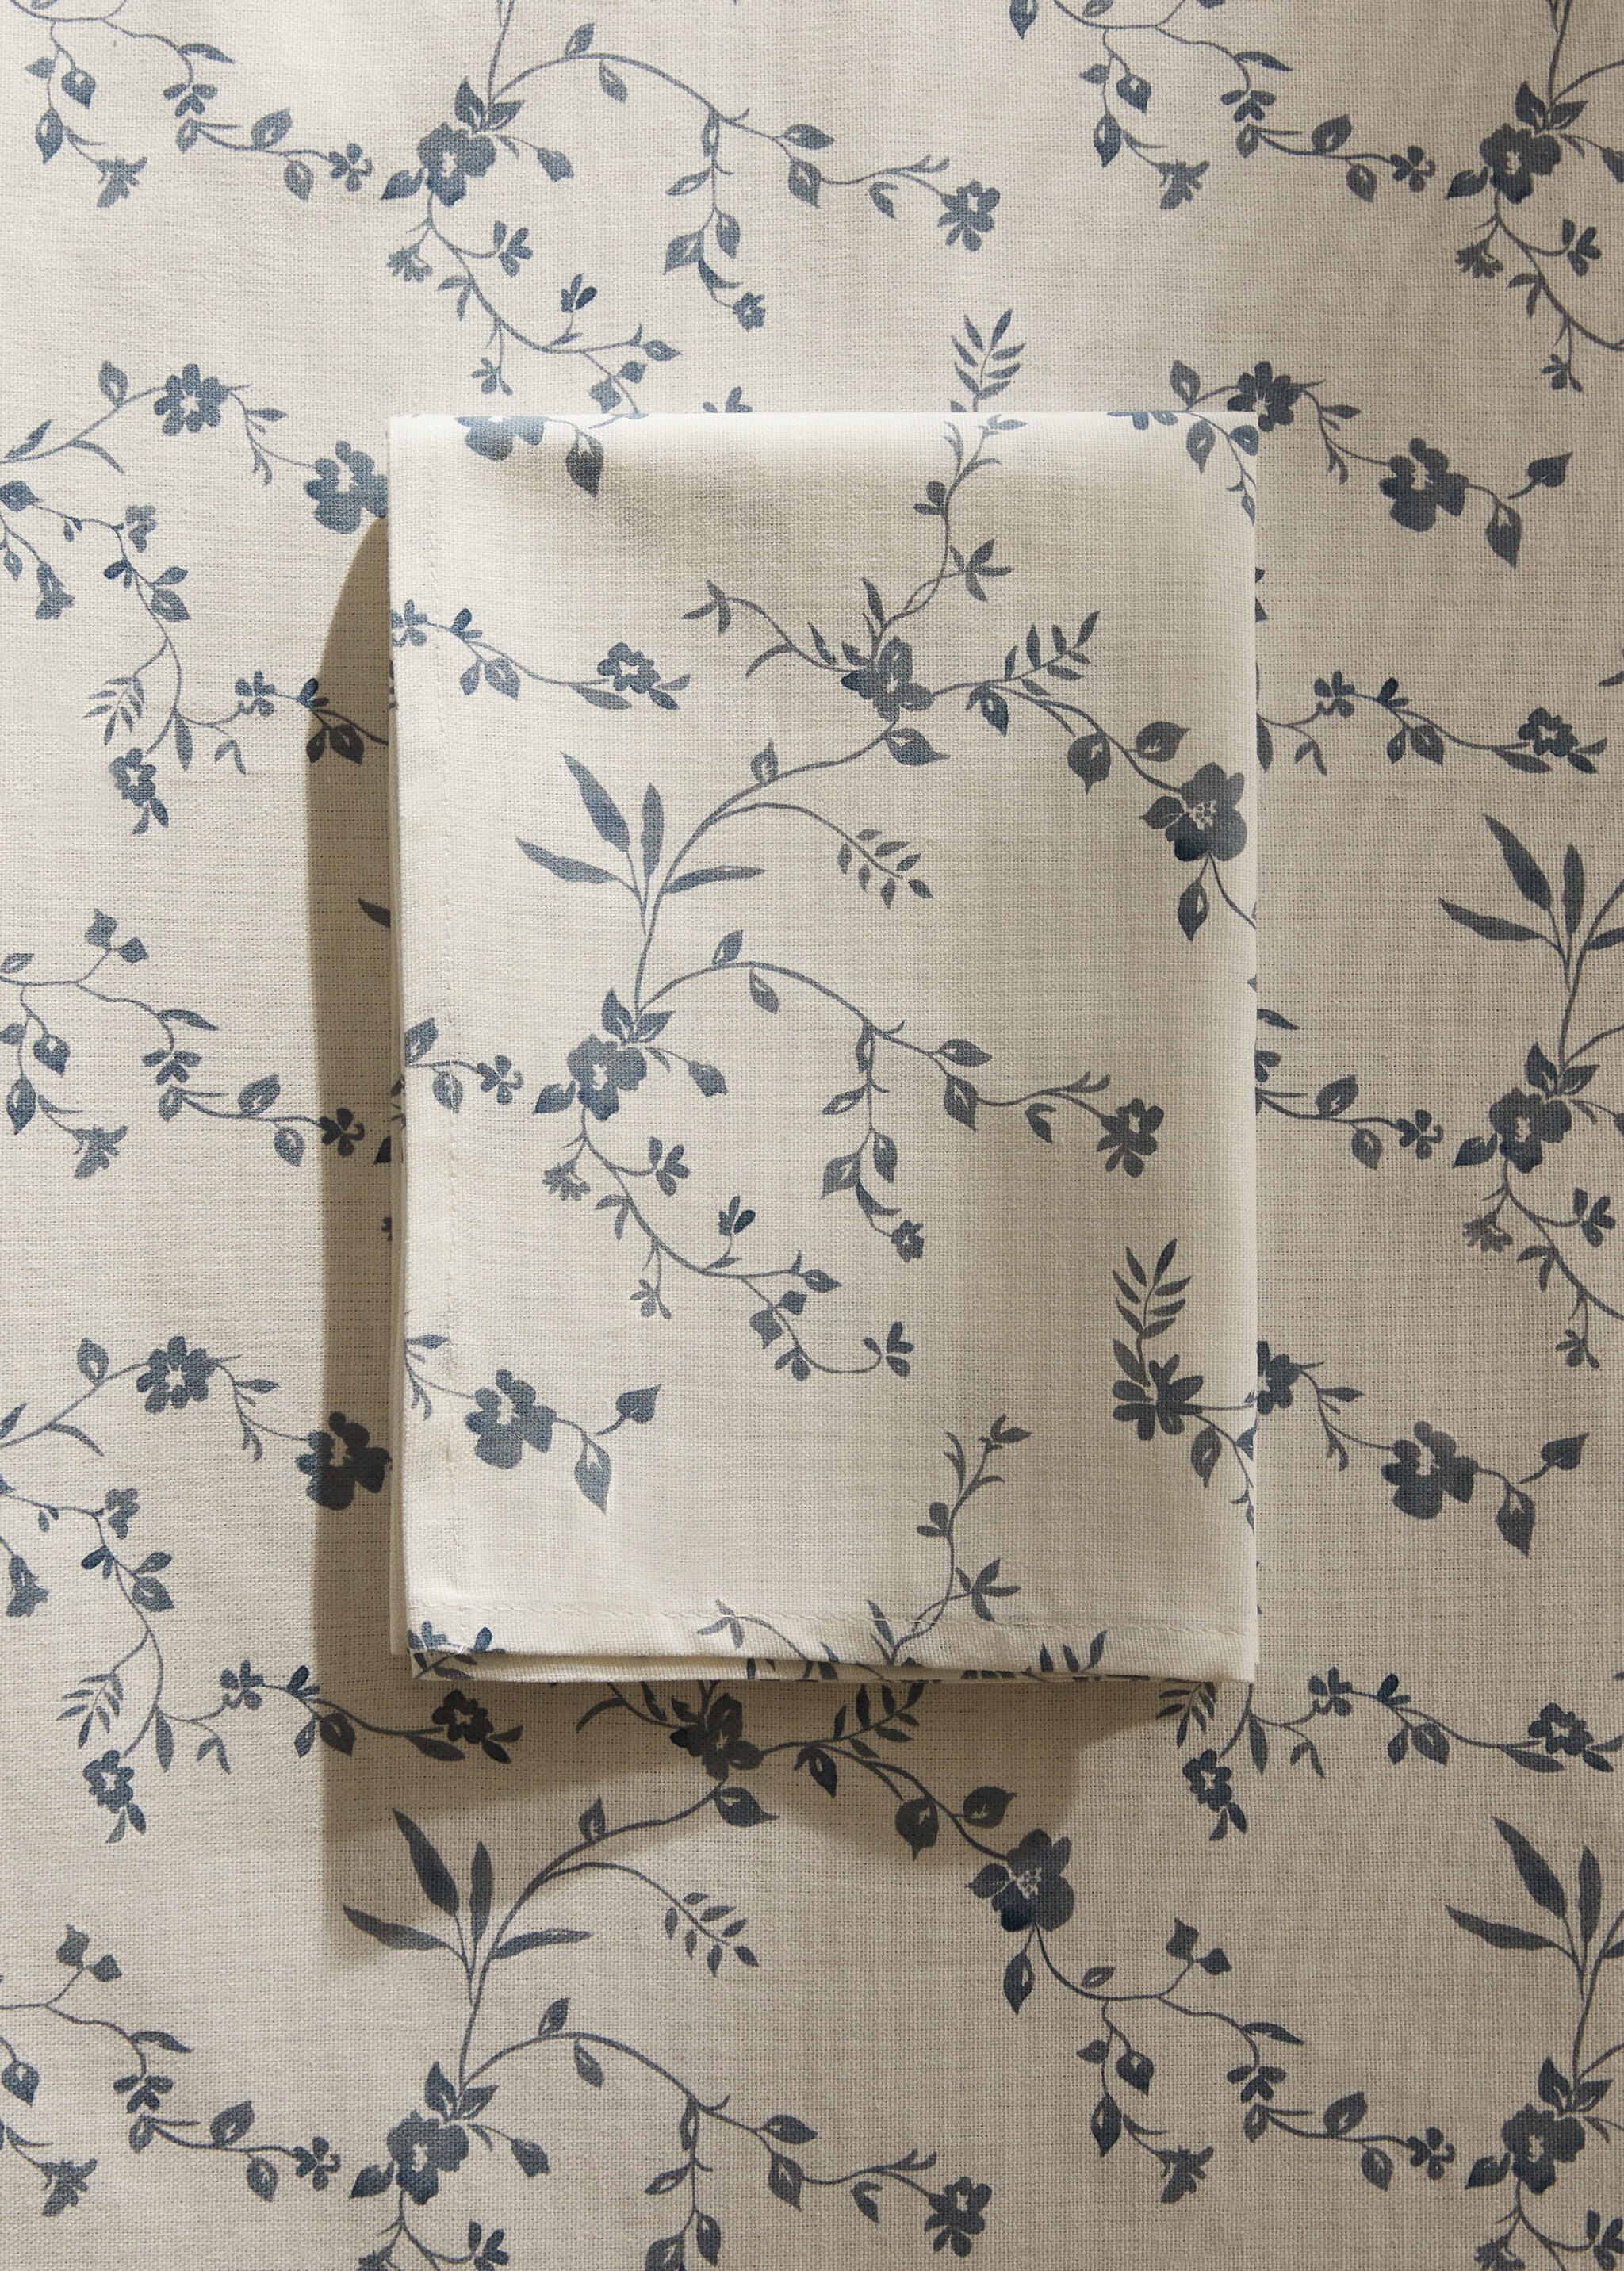 Floral-print cotton napkin - General plane